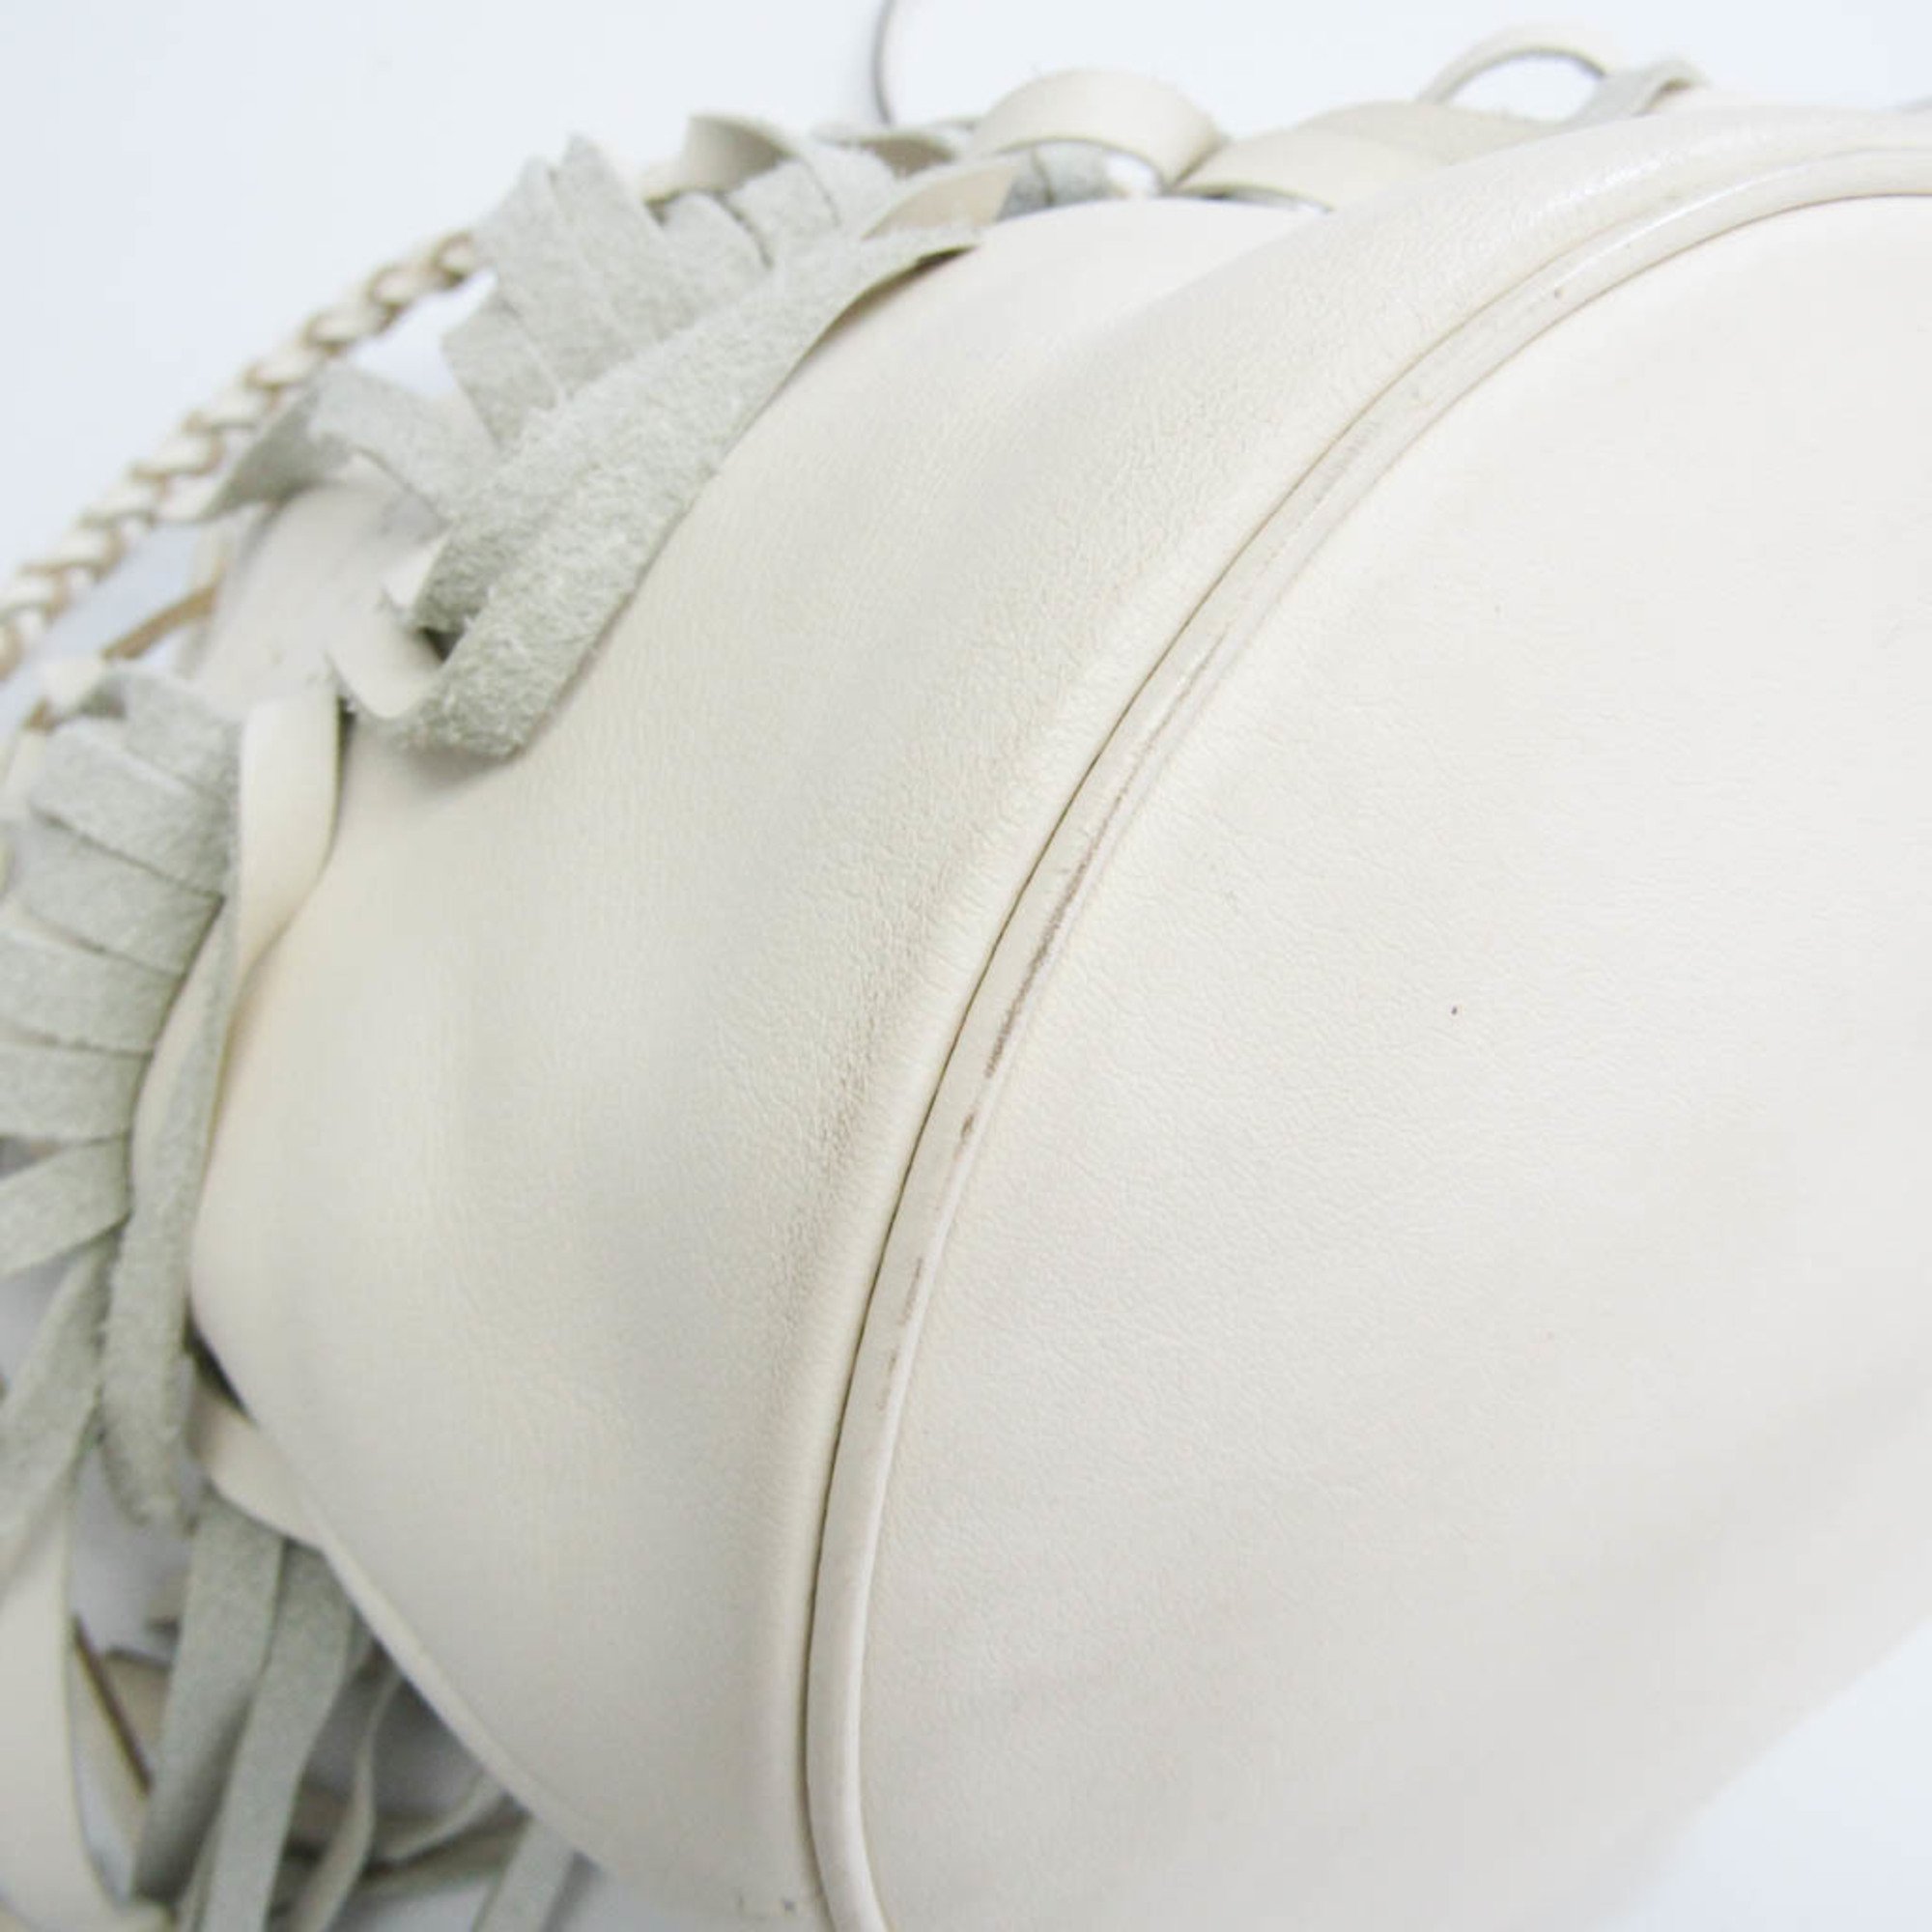 J&M Davidson Carnival M Women's Leather Shoulder Bag,Tote Bag Off-white